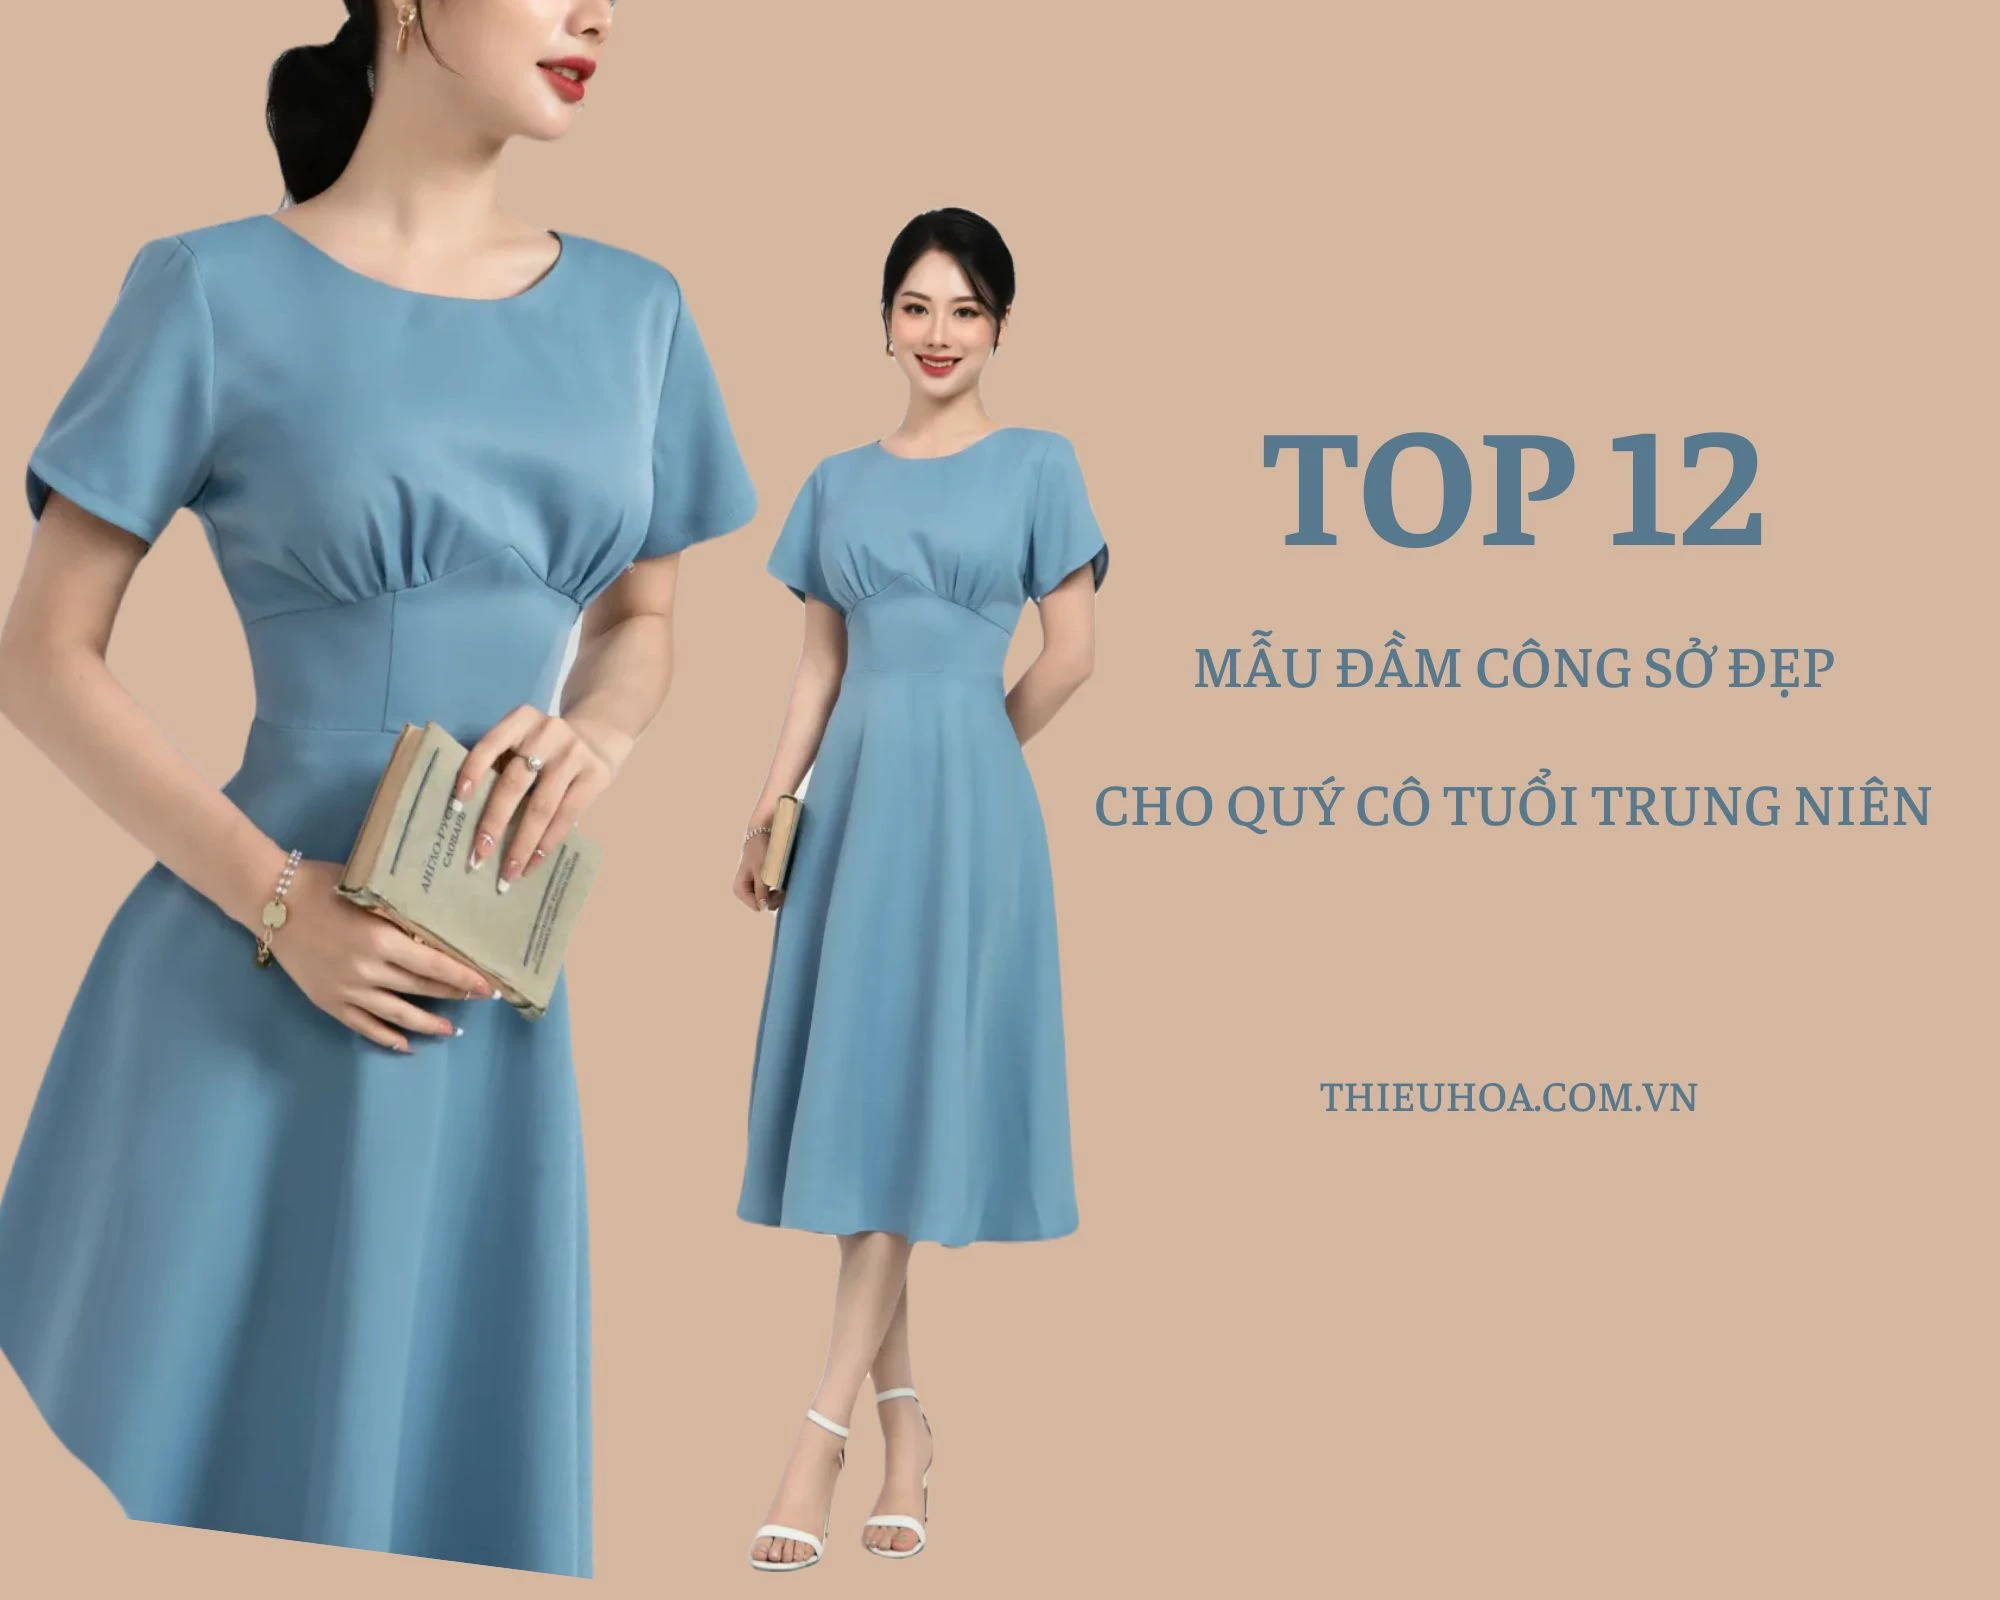 Top 12 mẫu đầm công sở đẹp ấn tượng cho quý cô tuổi trung niên